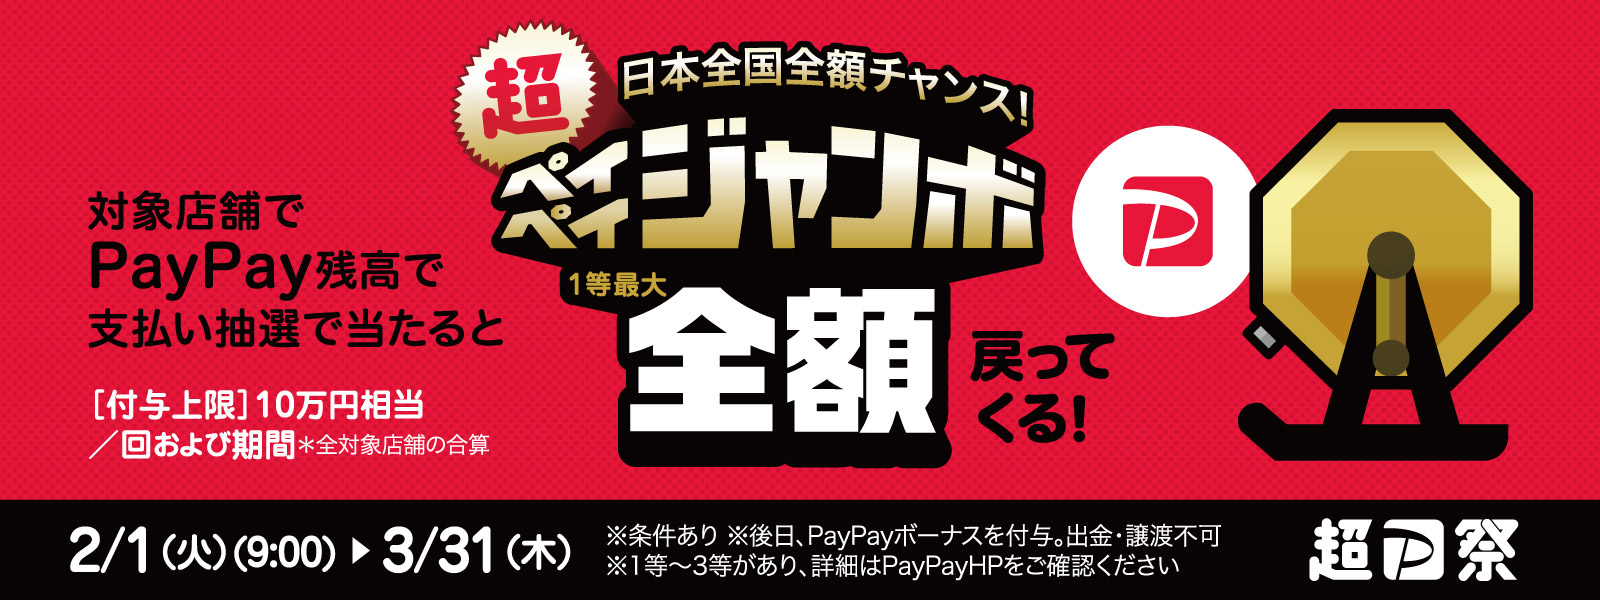 祭り 上限 ペイペイ 超 ヤフーとLINEがグループ企業となる経営統合記念 「超PayPay祭」を本日から開催